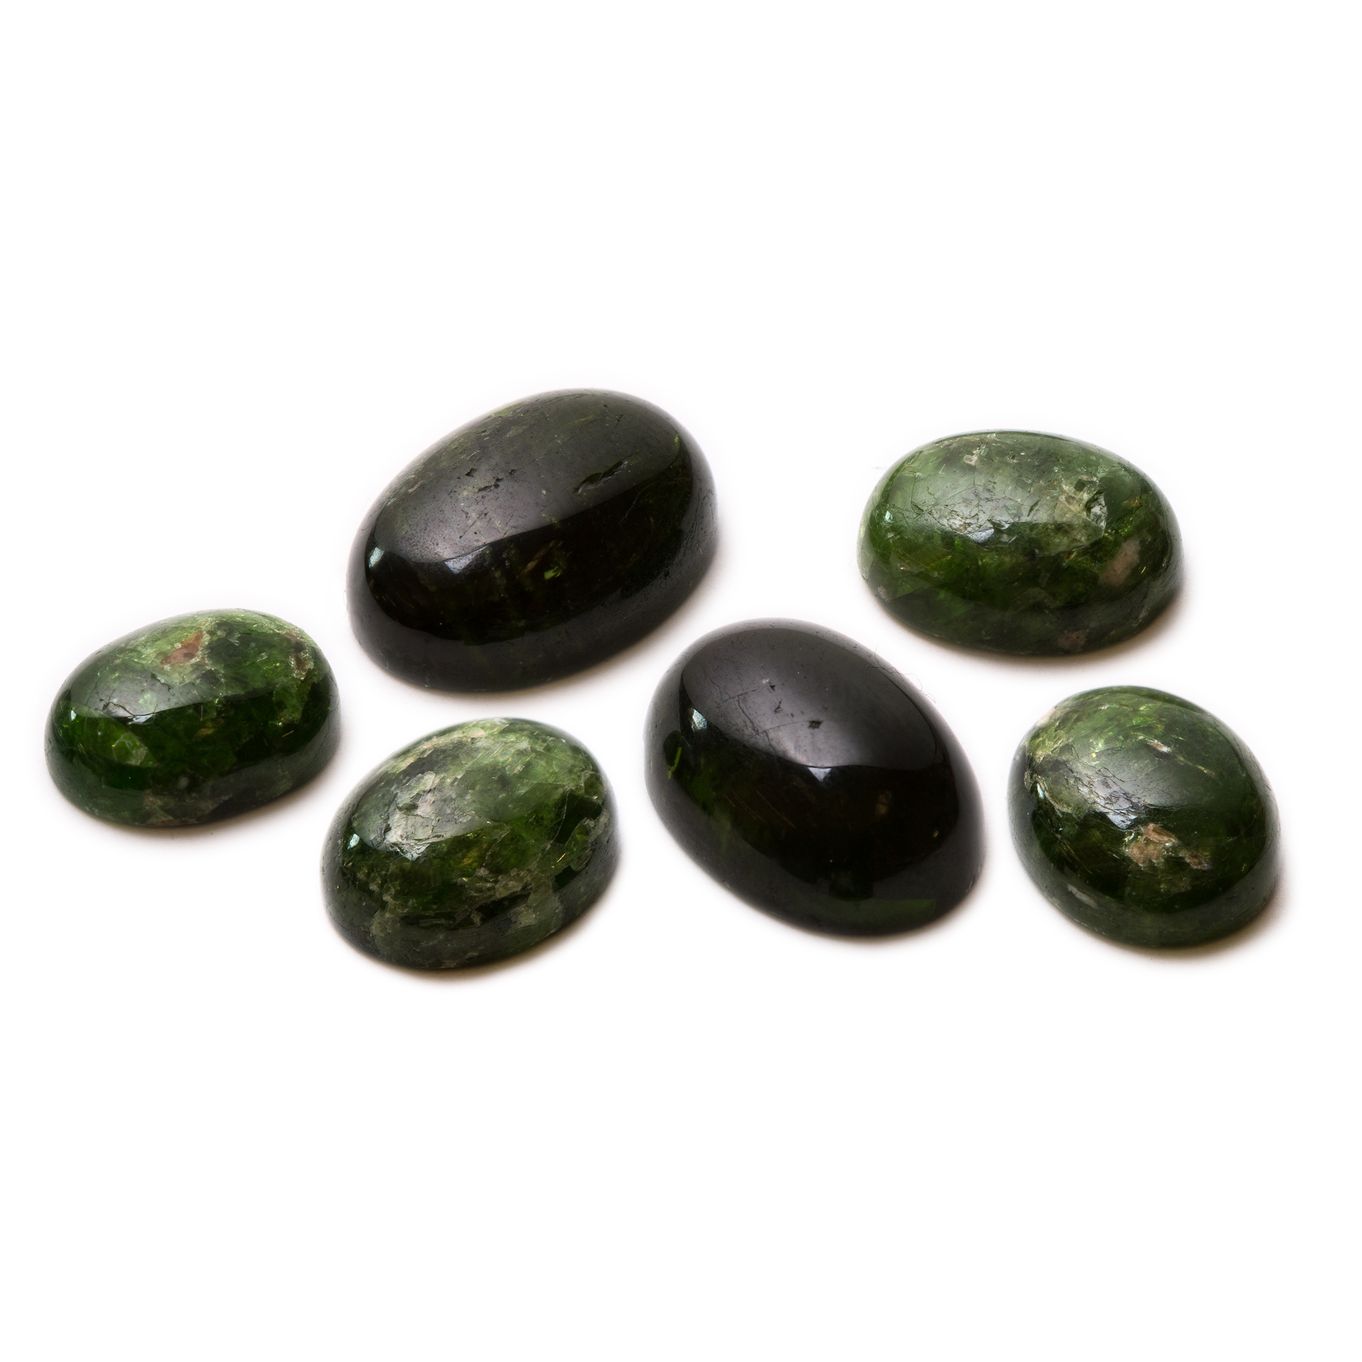 Buy Black Colored Gemstones Online at Best Price